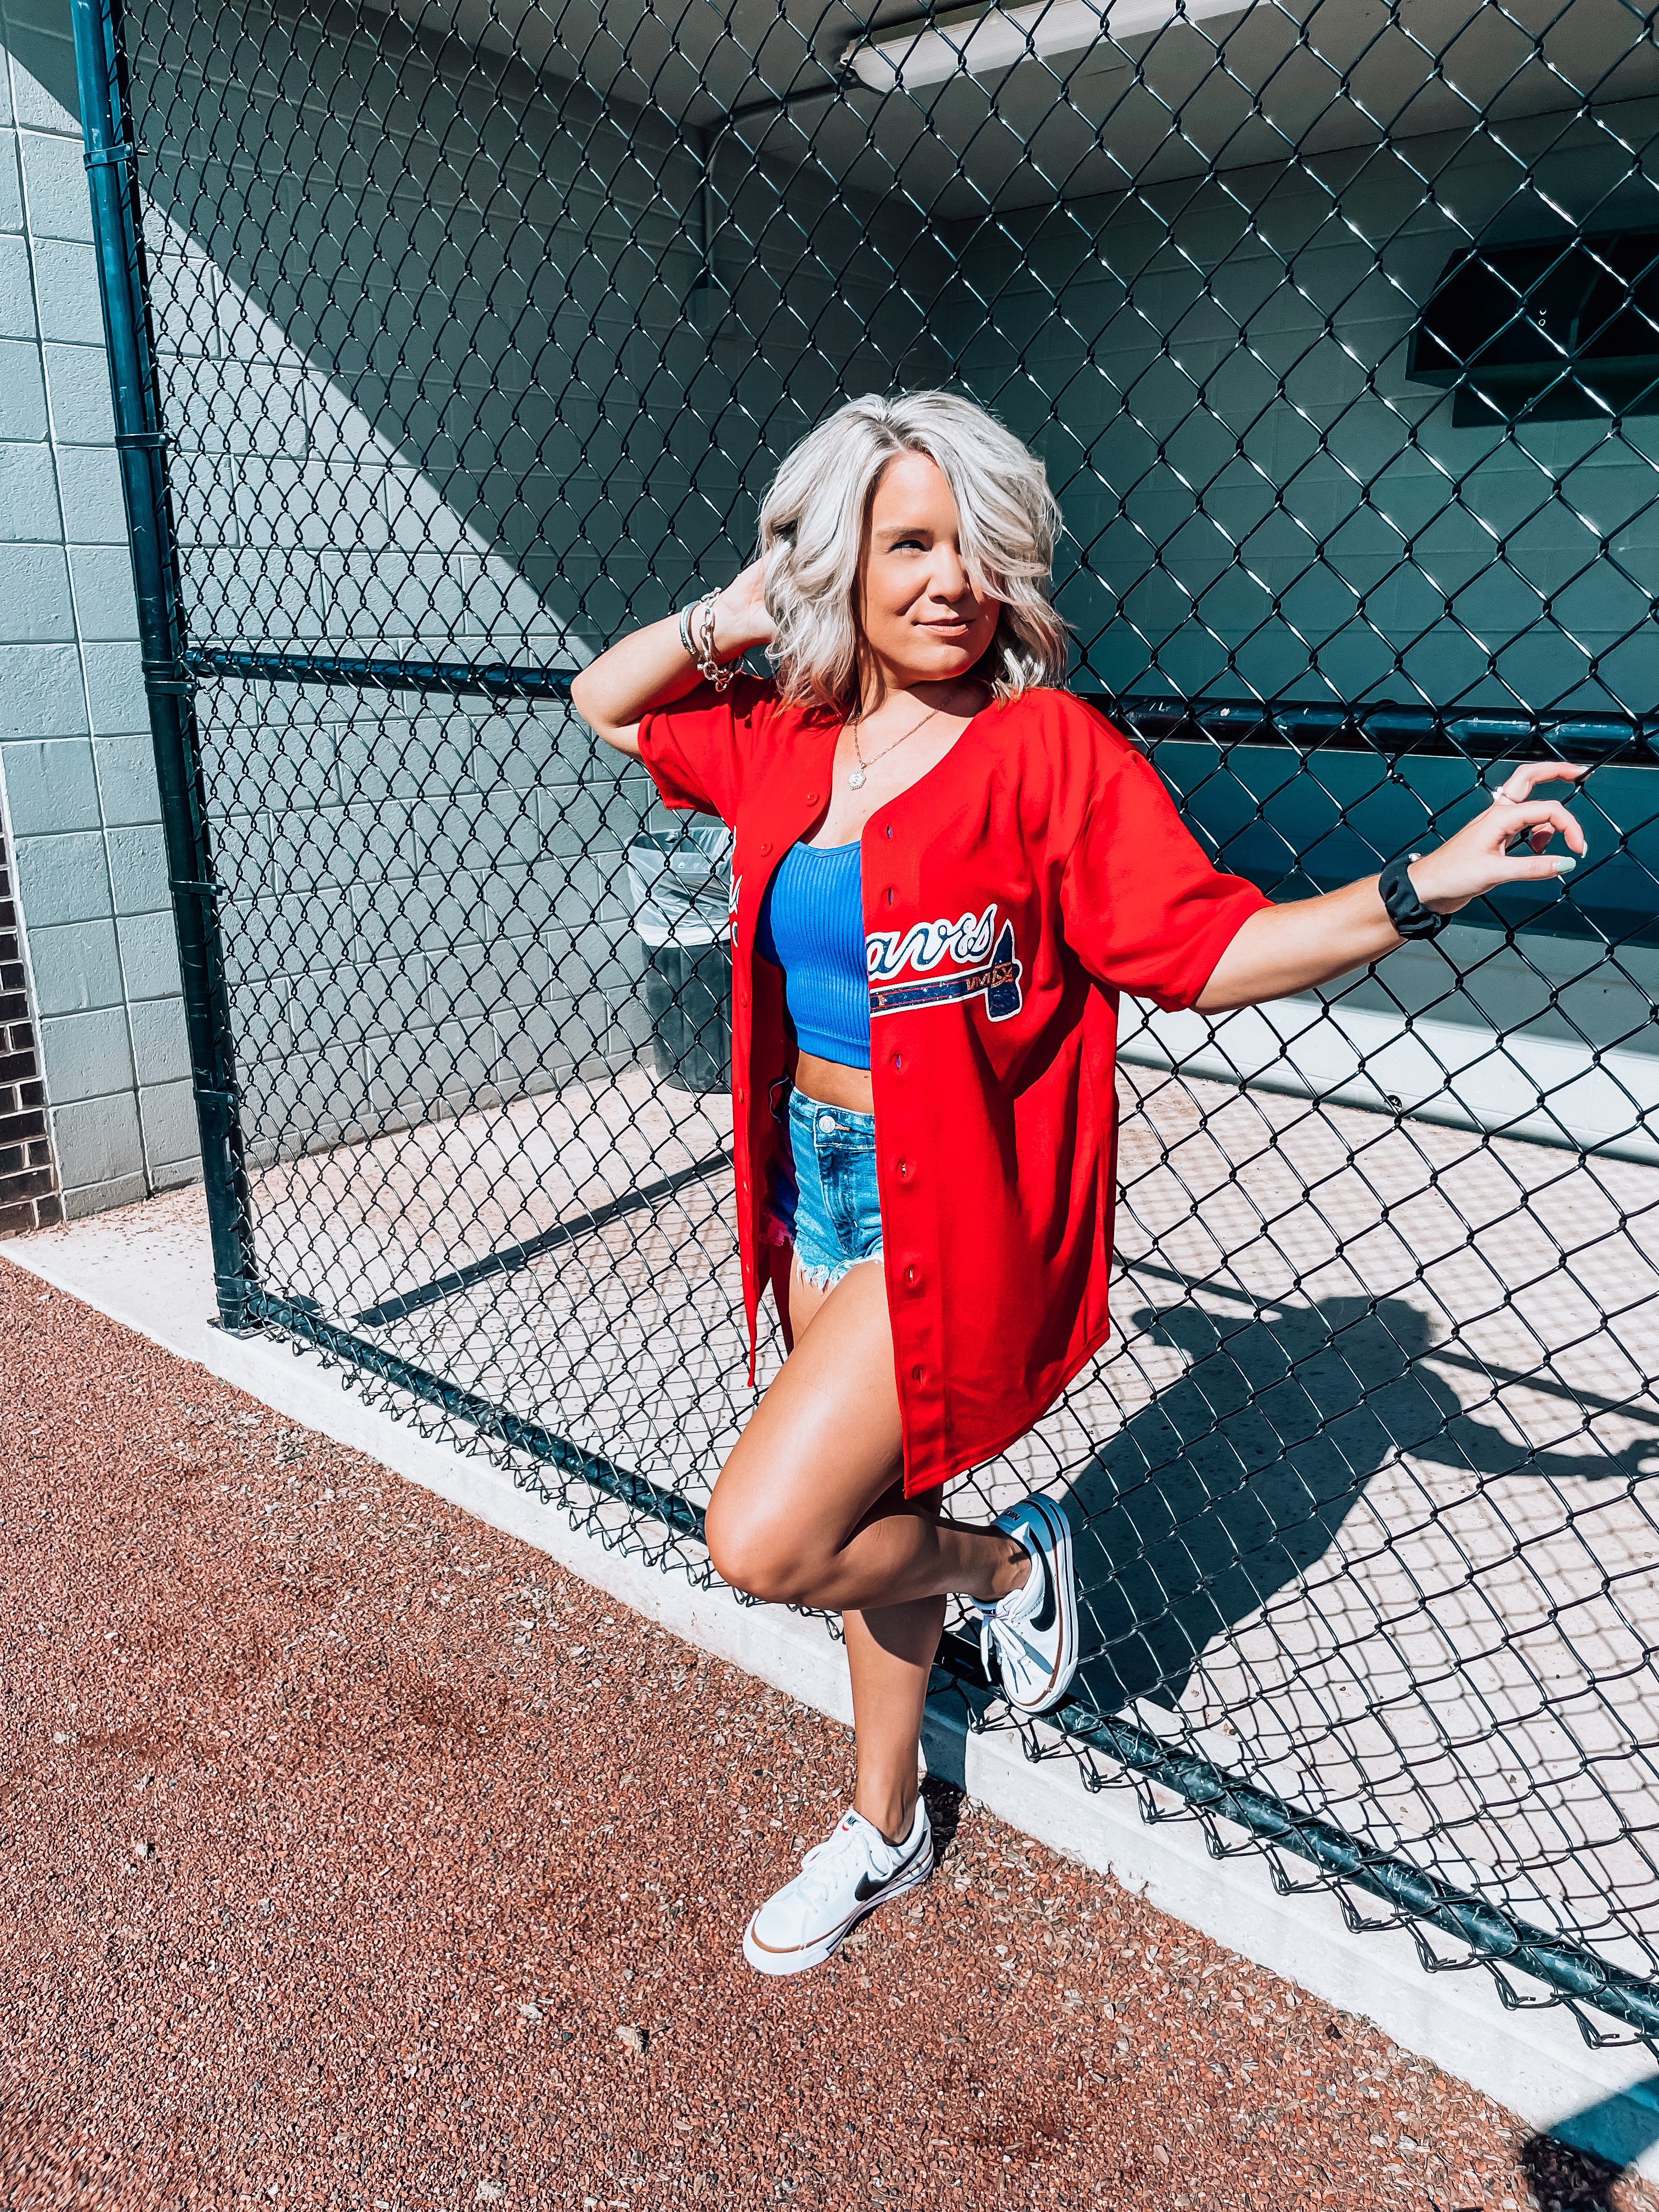 Atlanta Braves Inspired Stars Glitter Top: Baseball Fan Gear & Apparel for  Women – LuLu Grace